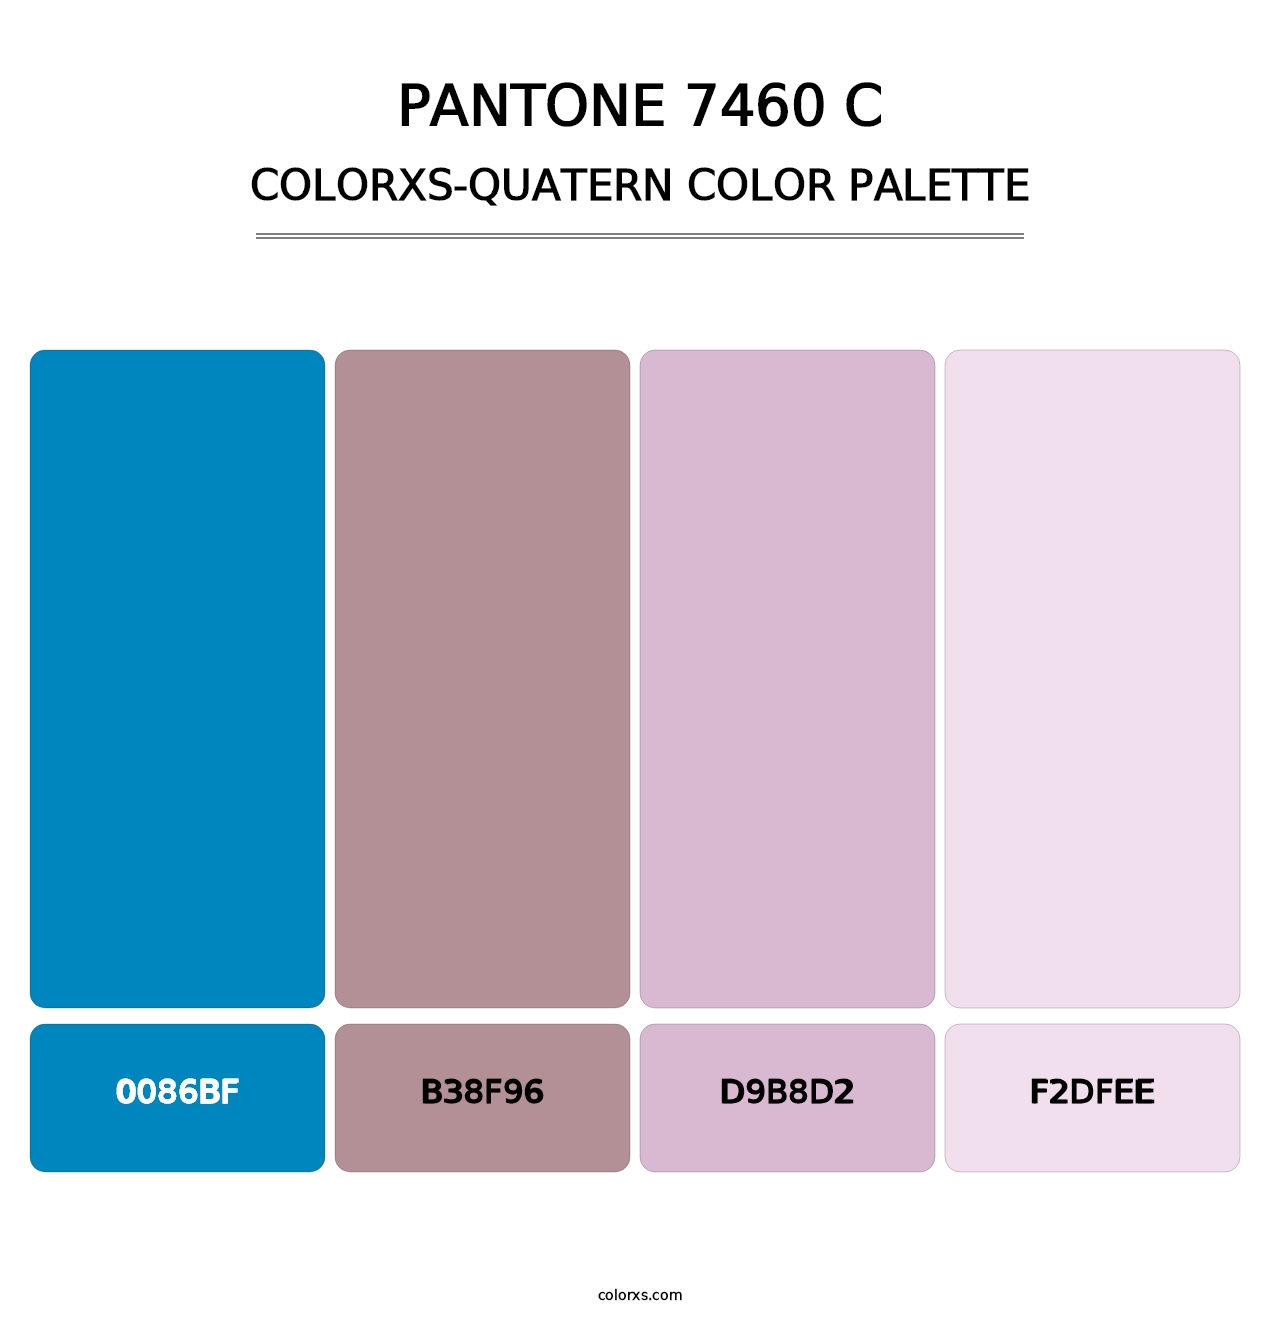 PANTONE 7460 C - Colorxs Quatern Palette